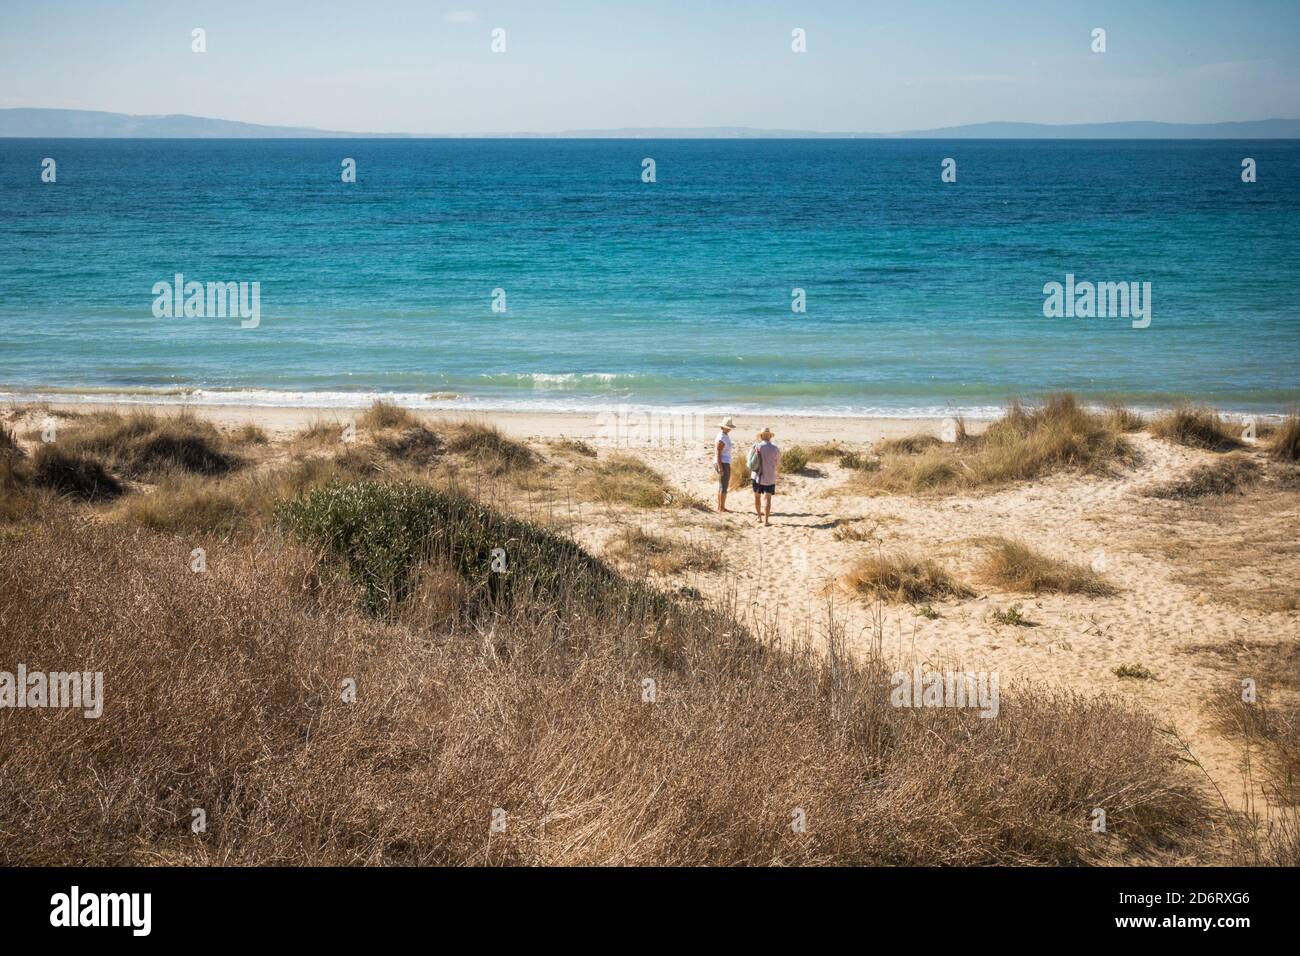 Plage de Tarifa, couple dans les dunes, Playa de los lances, environnement naturel de plage, Cadix, Costa de la Luz, Andalousie, Espagne. Banque D'Images